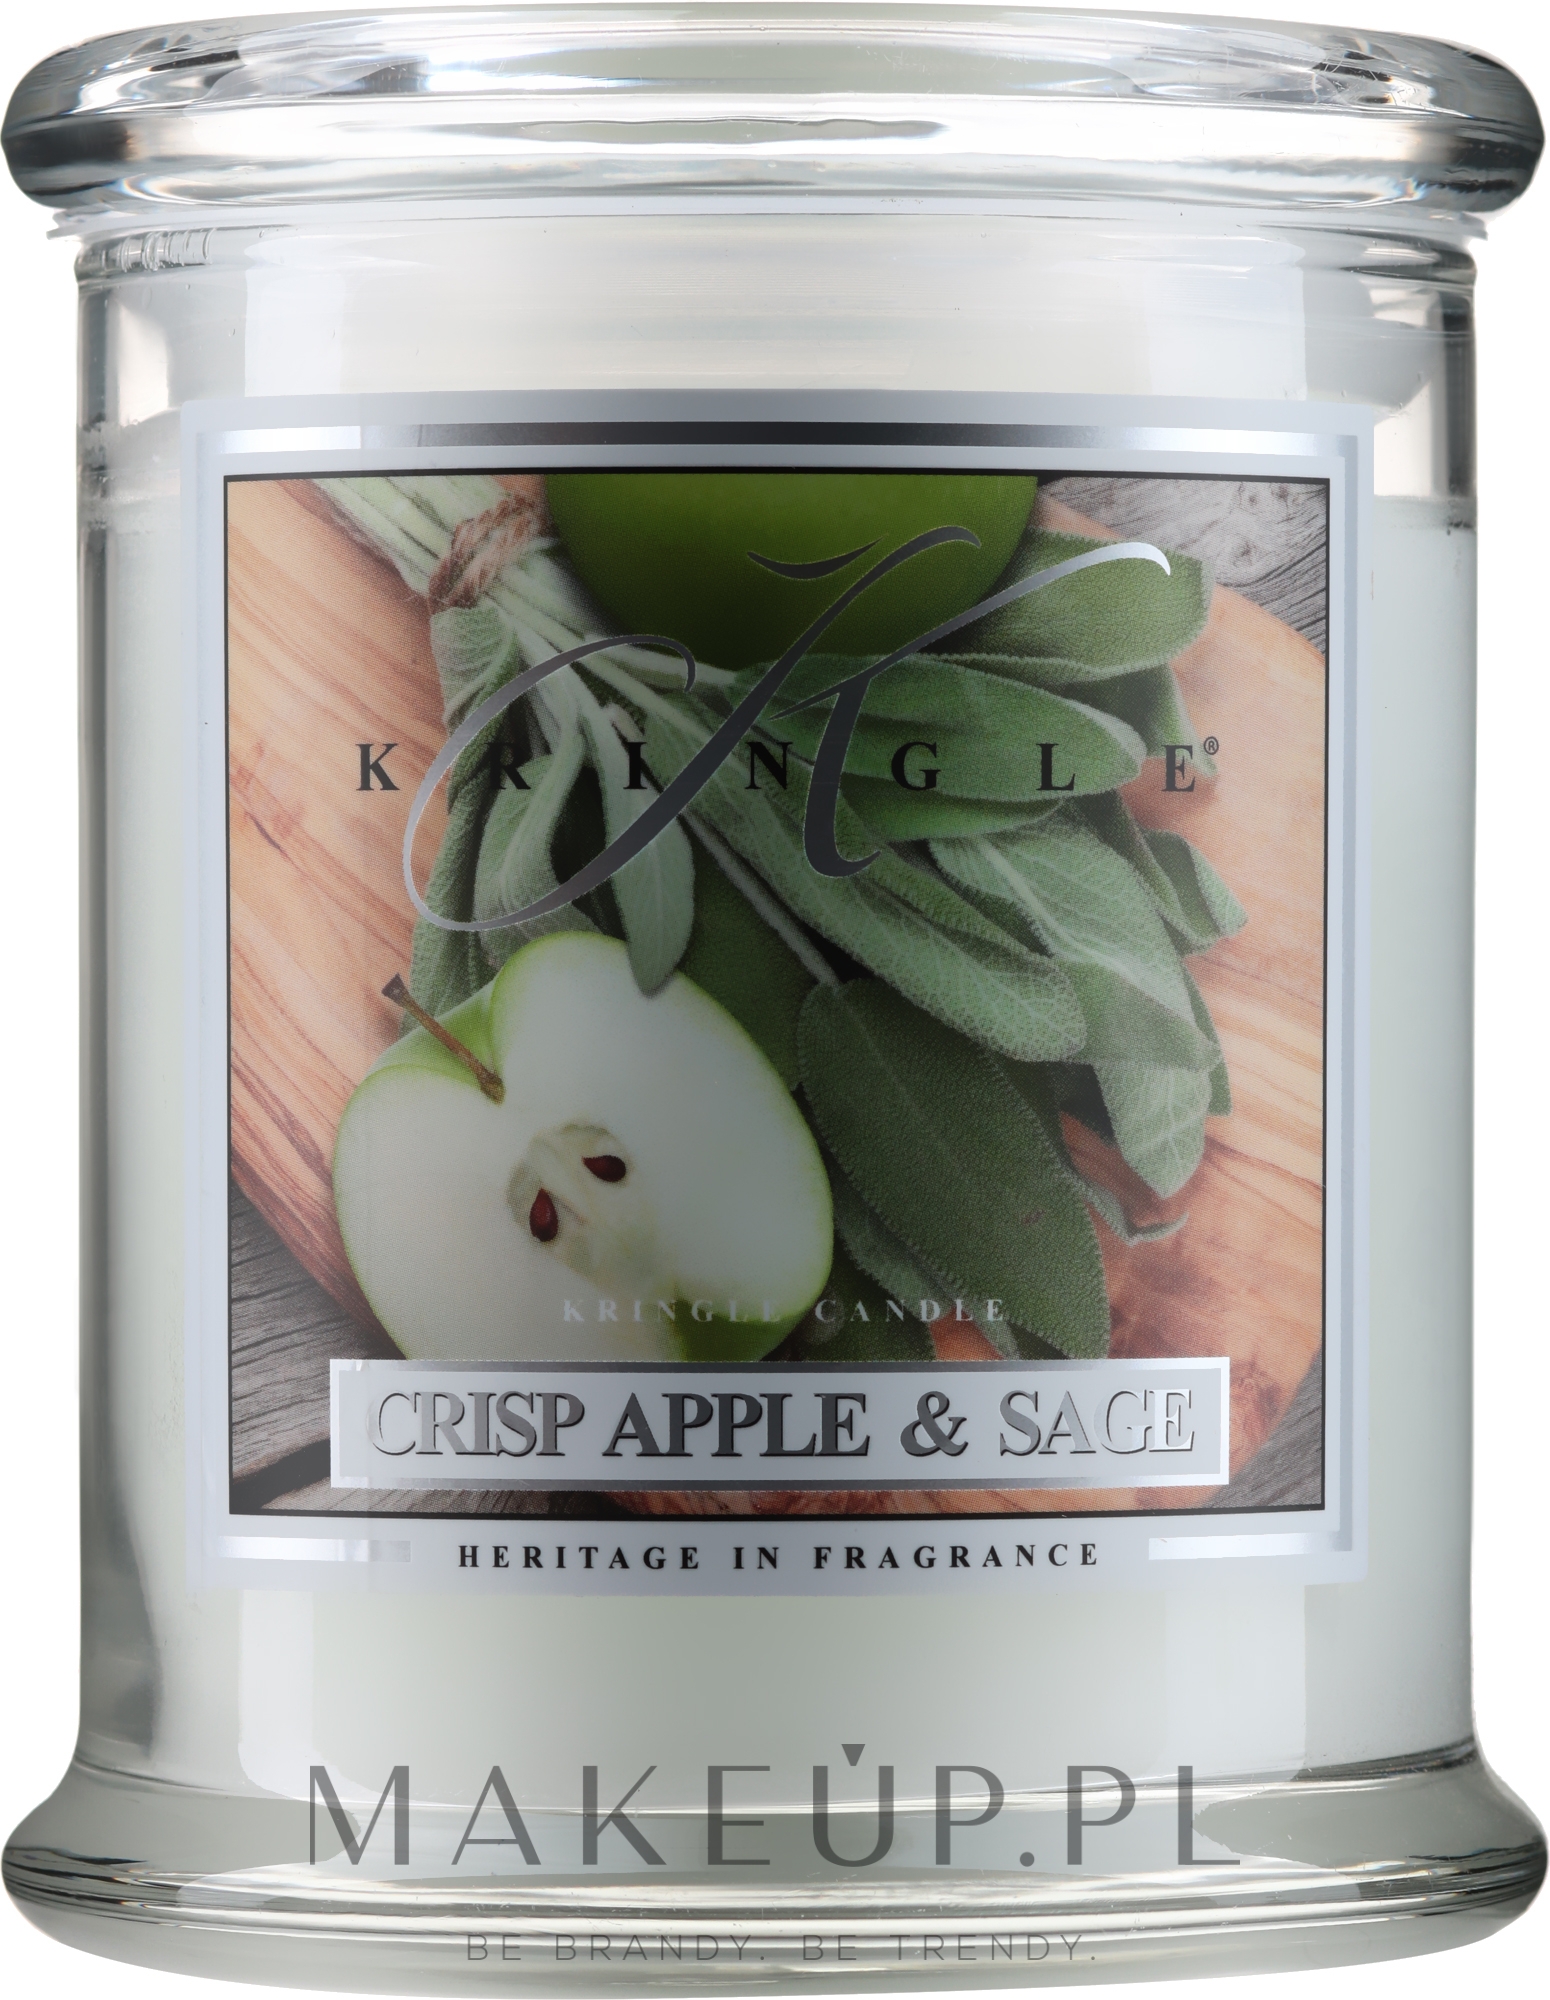 Świeca zapachowa w słoiku - Kringle Candle Crisp Apple & Sage — Zdjęcie 411 g